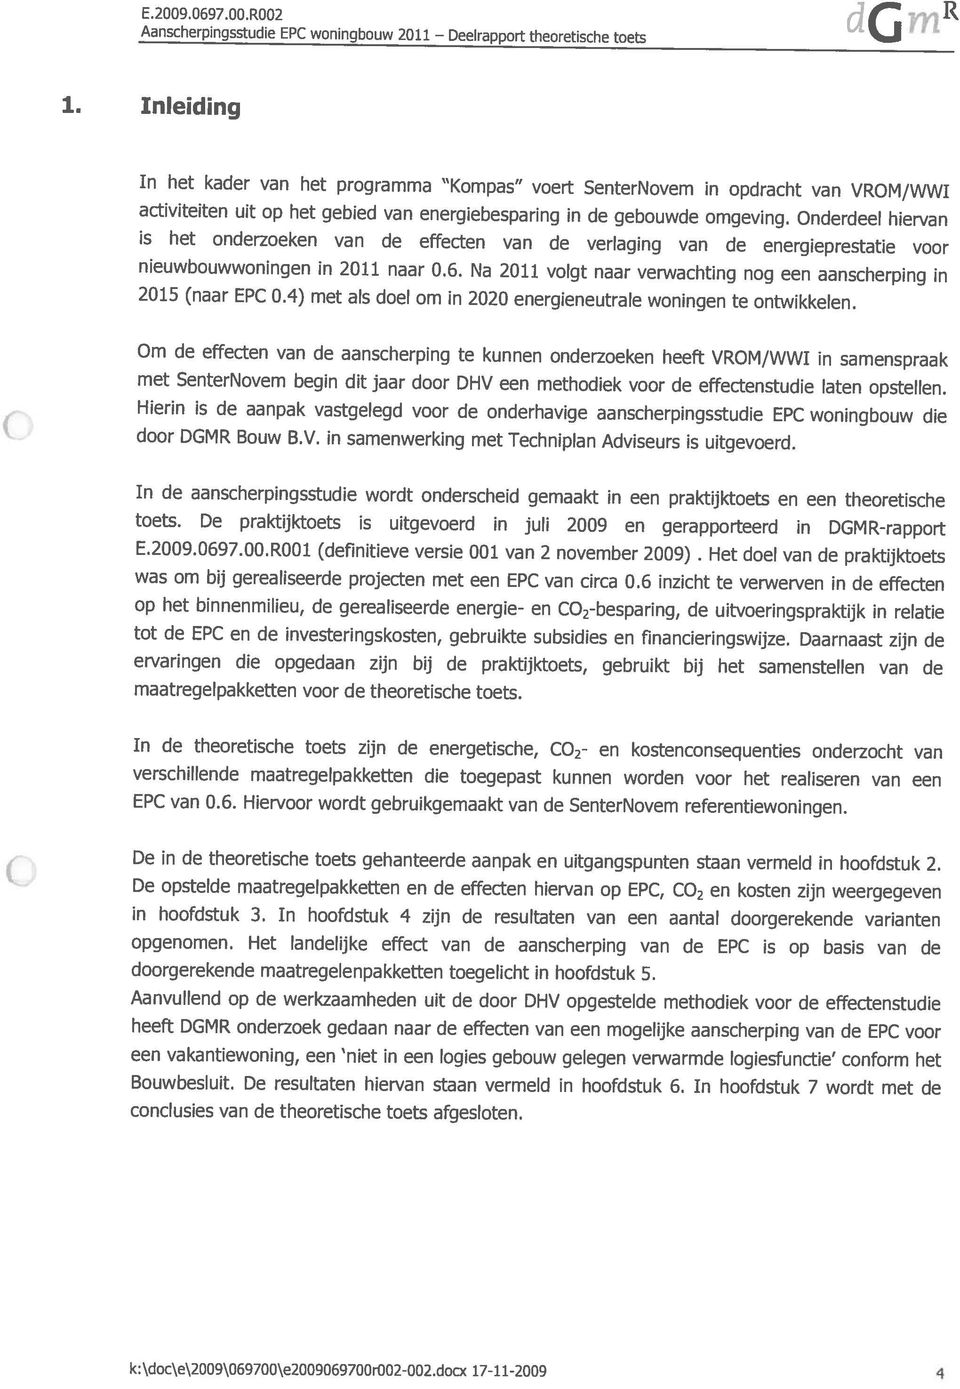 docx 17-11-2009 4 conclusies van de theoretische toets afgesloten. Aanvullend op de werkzaamheden uit de door DHV opgestelde methodiek voor de effectenstudie Bouwbesluit.